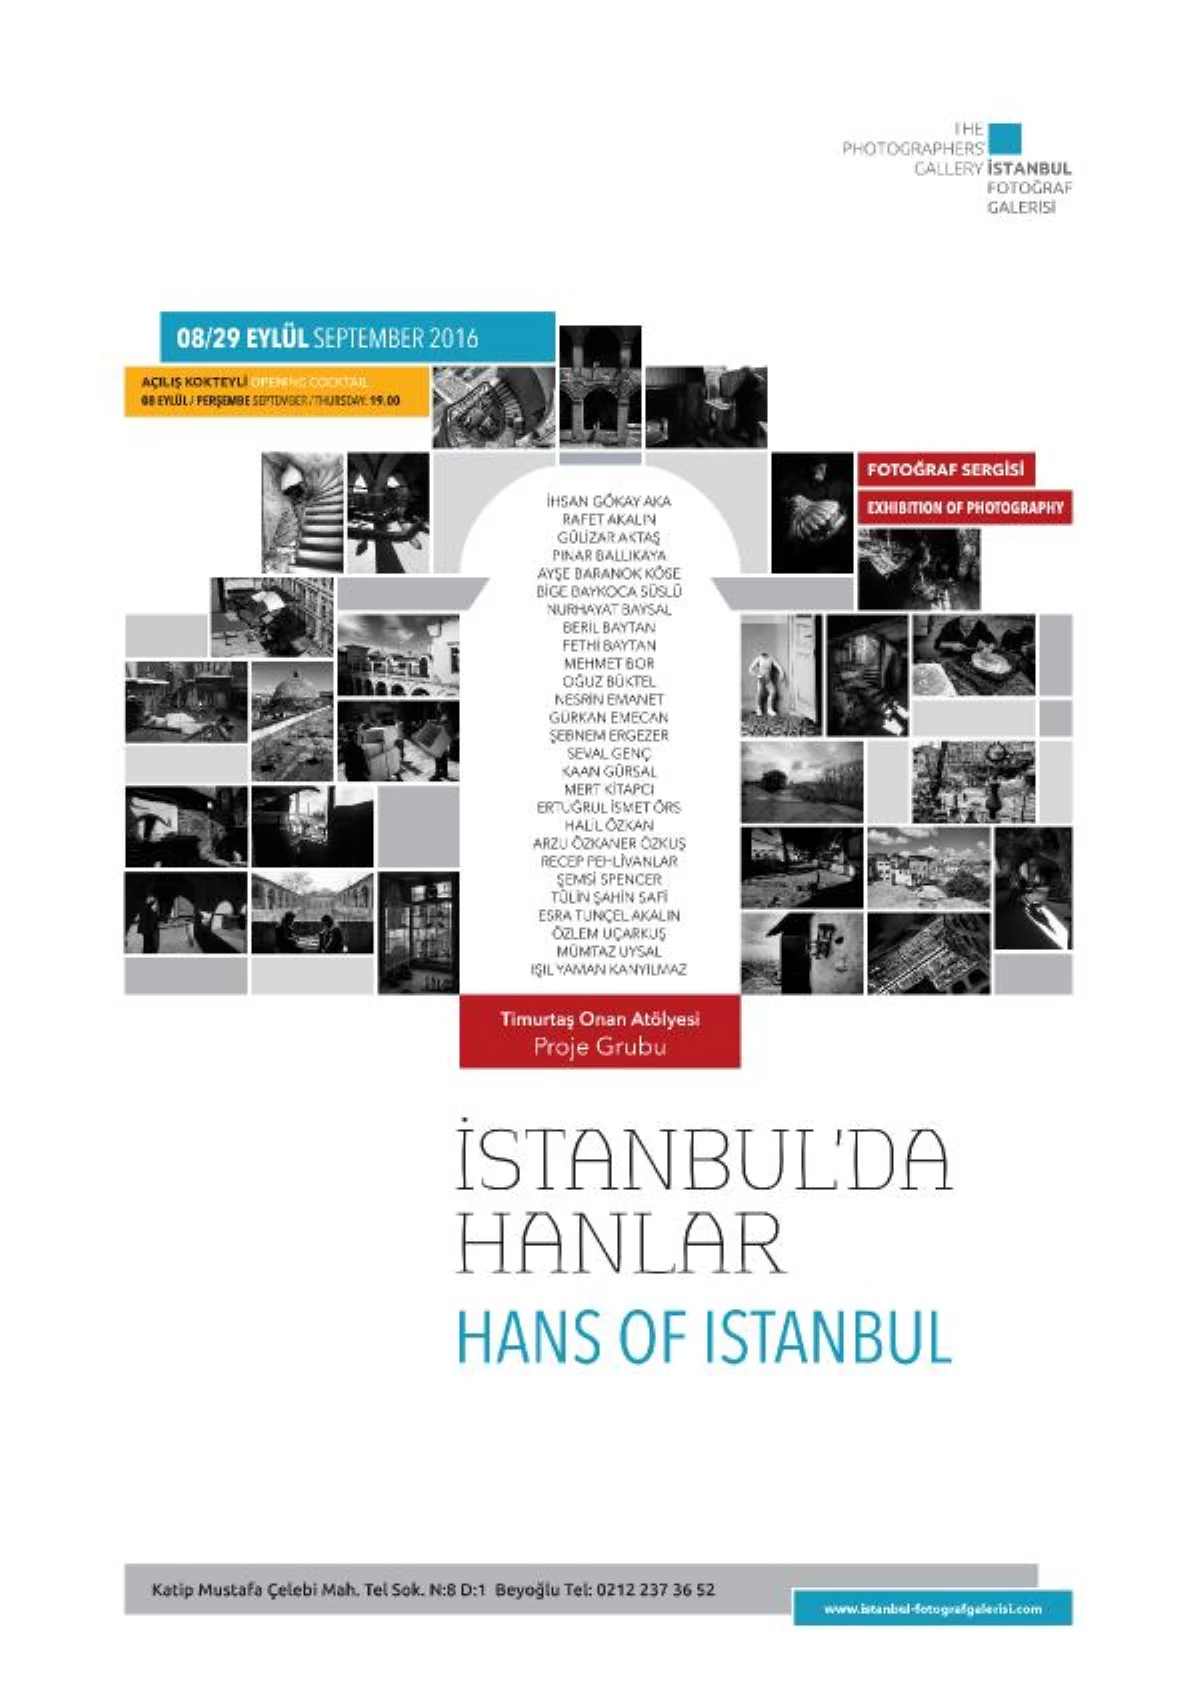 Geleceğe Direnen İstanbul Hanları, Fotoğraf Sergisine Konu Oldu